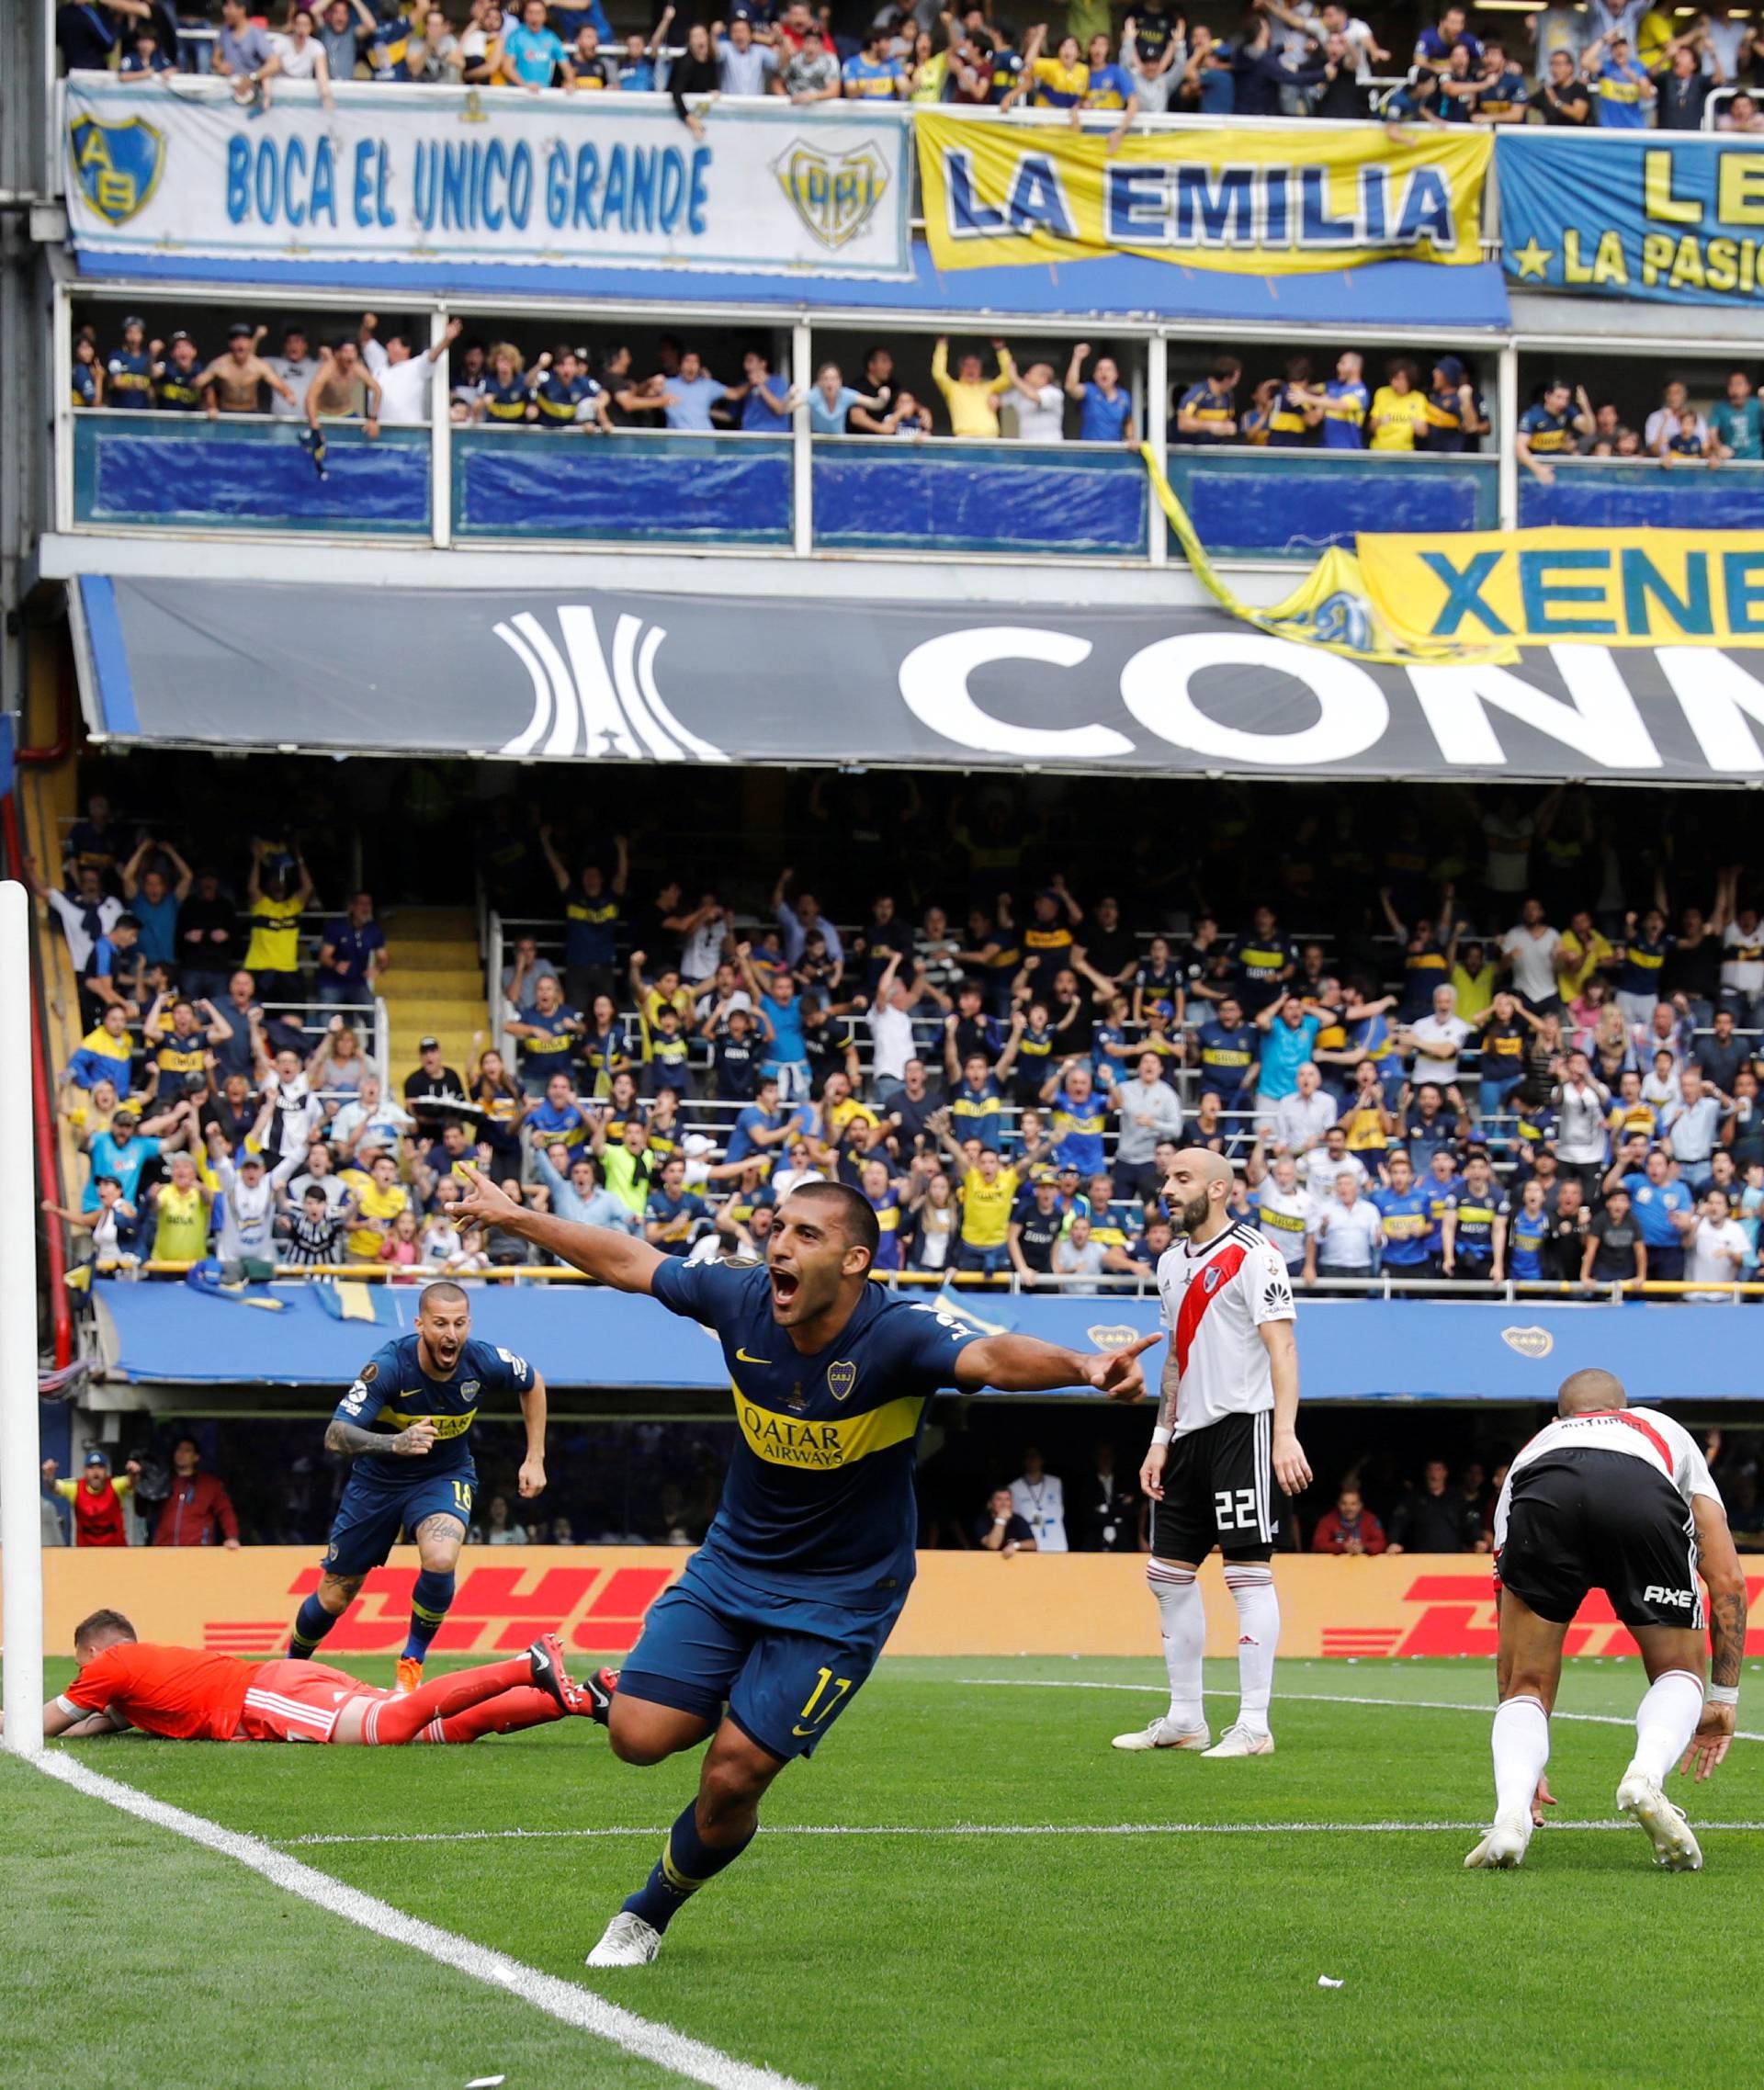 Copa Libertadores Final - First Leg - Boca Juniors v River Plate